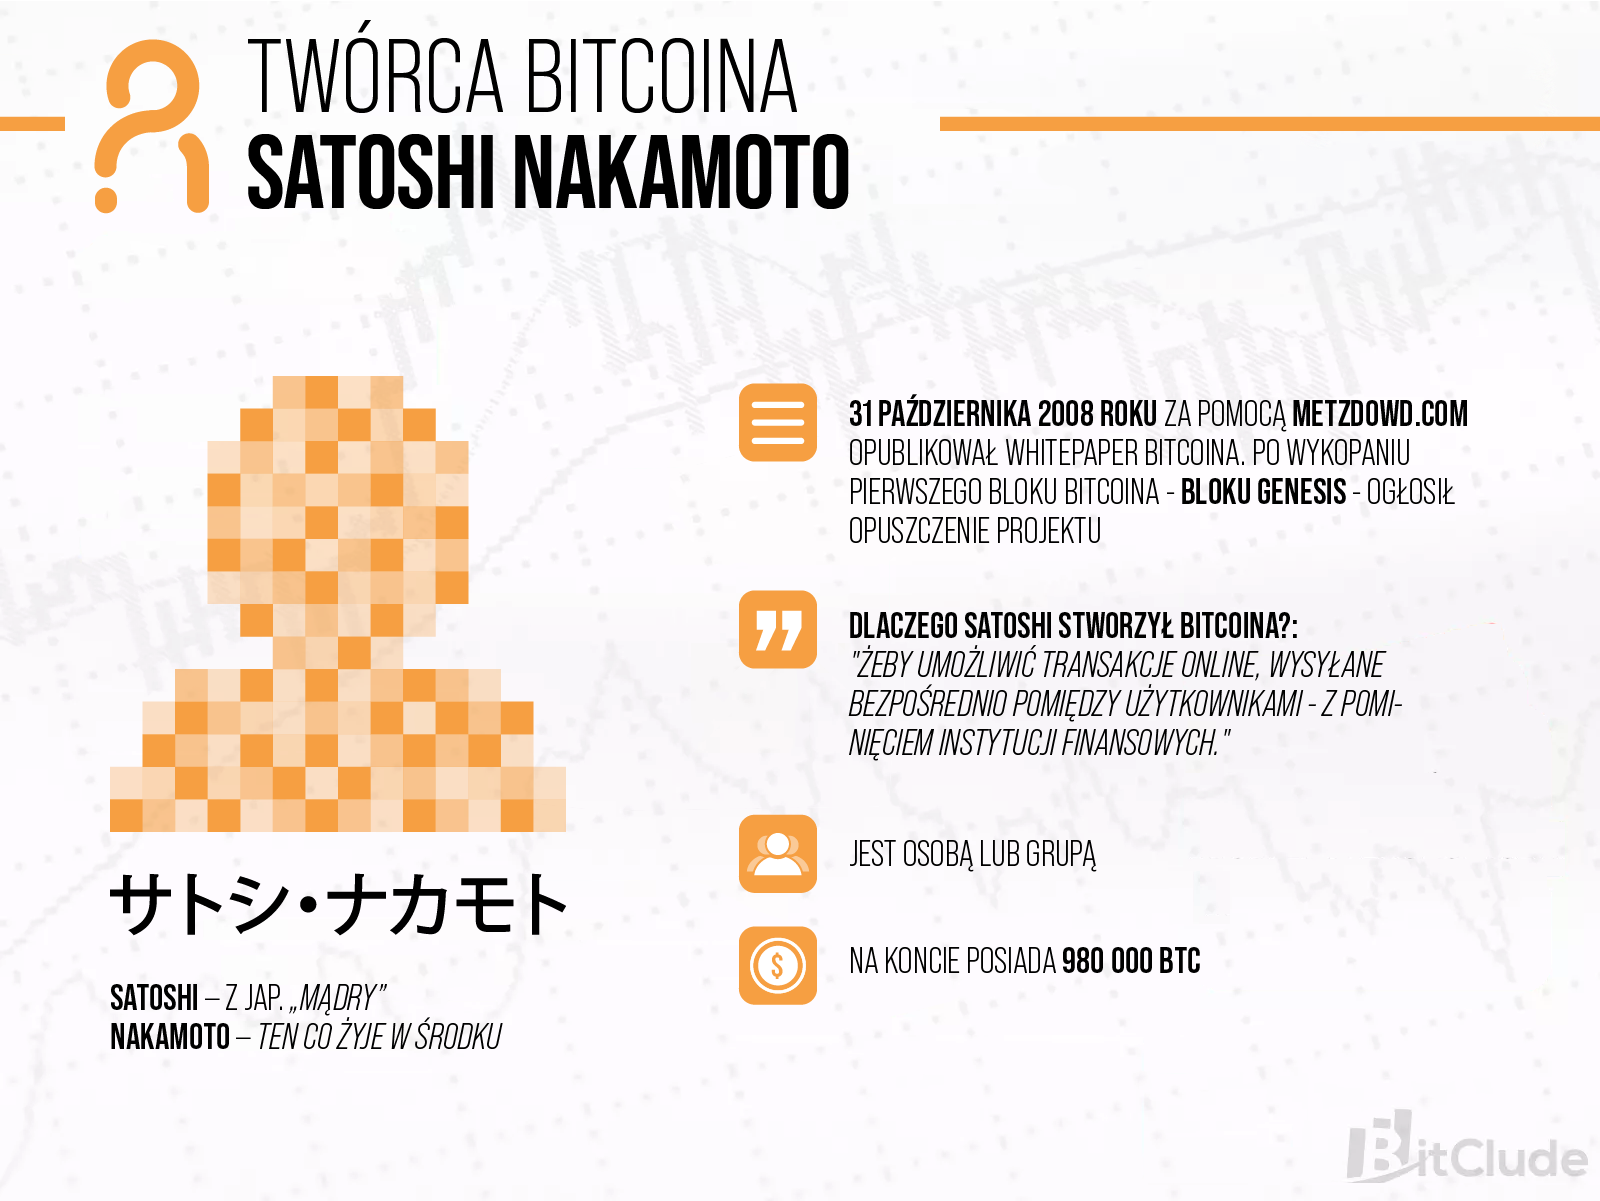 Twórca lub twórcy Bitcoina kryją się pod anonimowym pseudonimem Satoshi Nakamoto.